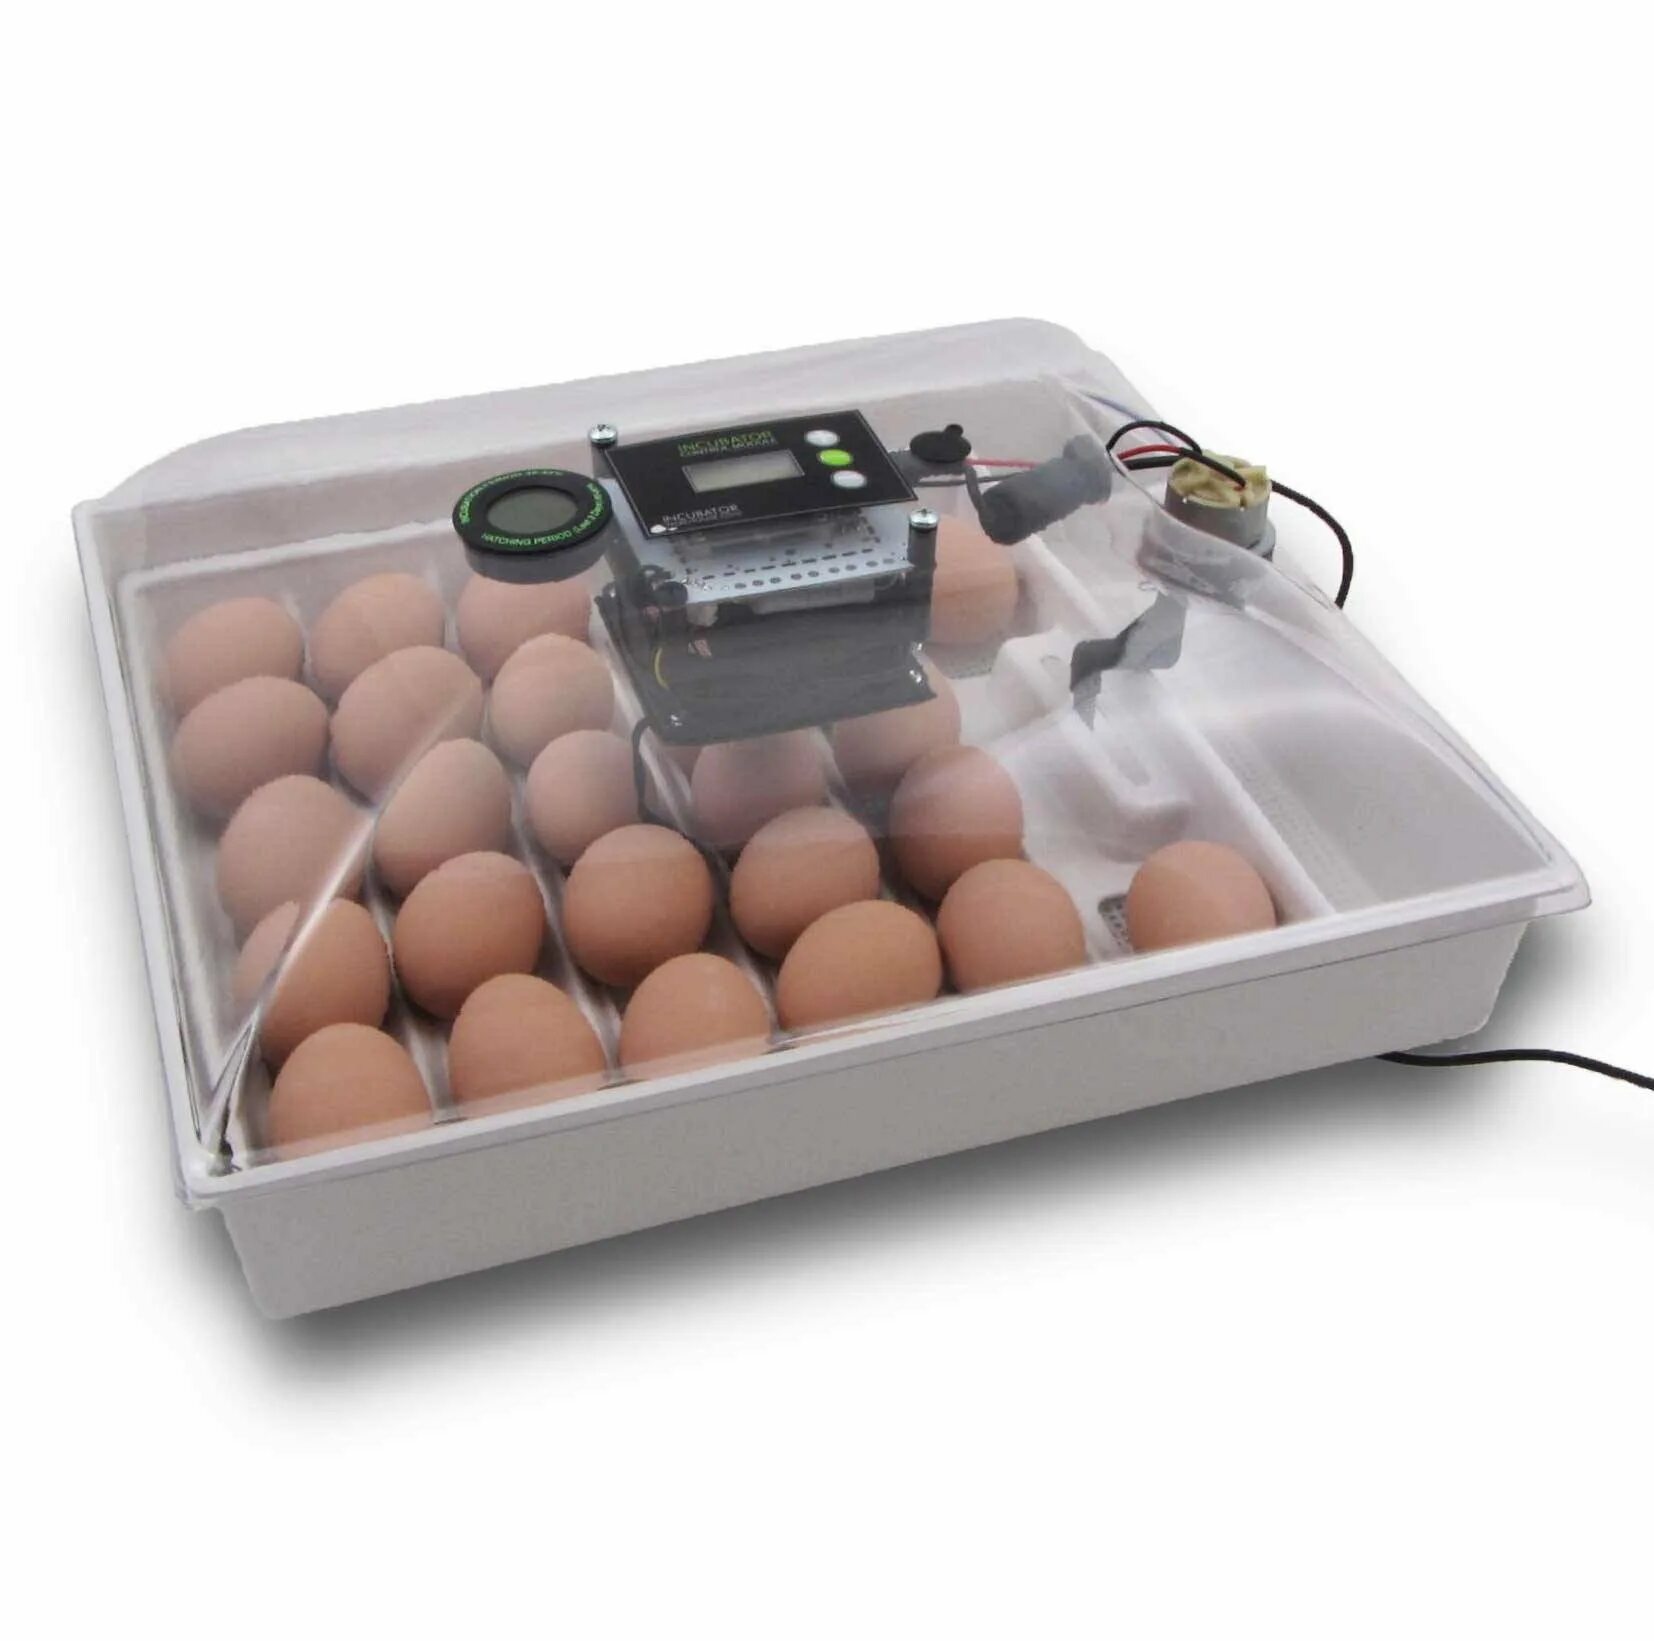 Инкубаторное яйцо купить. Инкубатор Egg incubator. Инкубатор FLORAFLEX incubator Kit. Инкубатор SITITEK 36. Кв400 binger инкубатор для яиц.